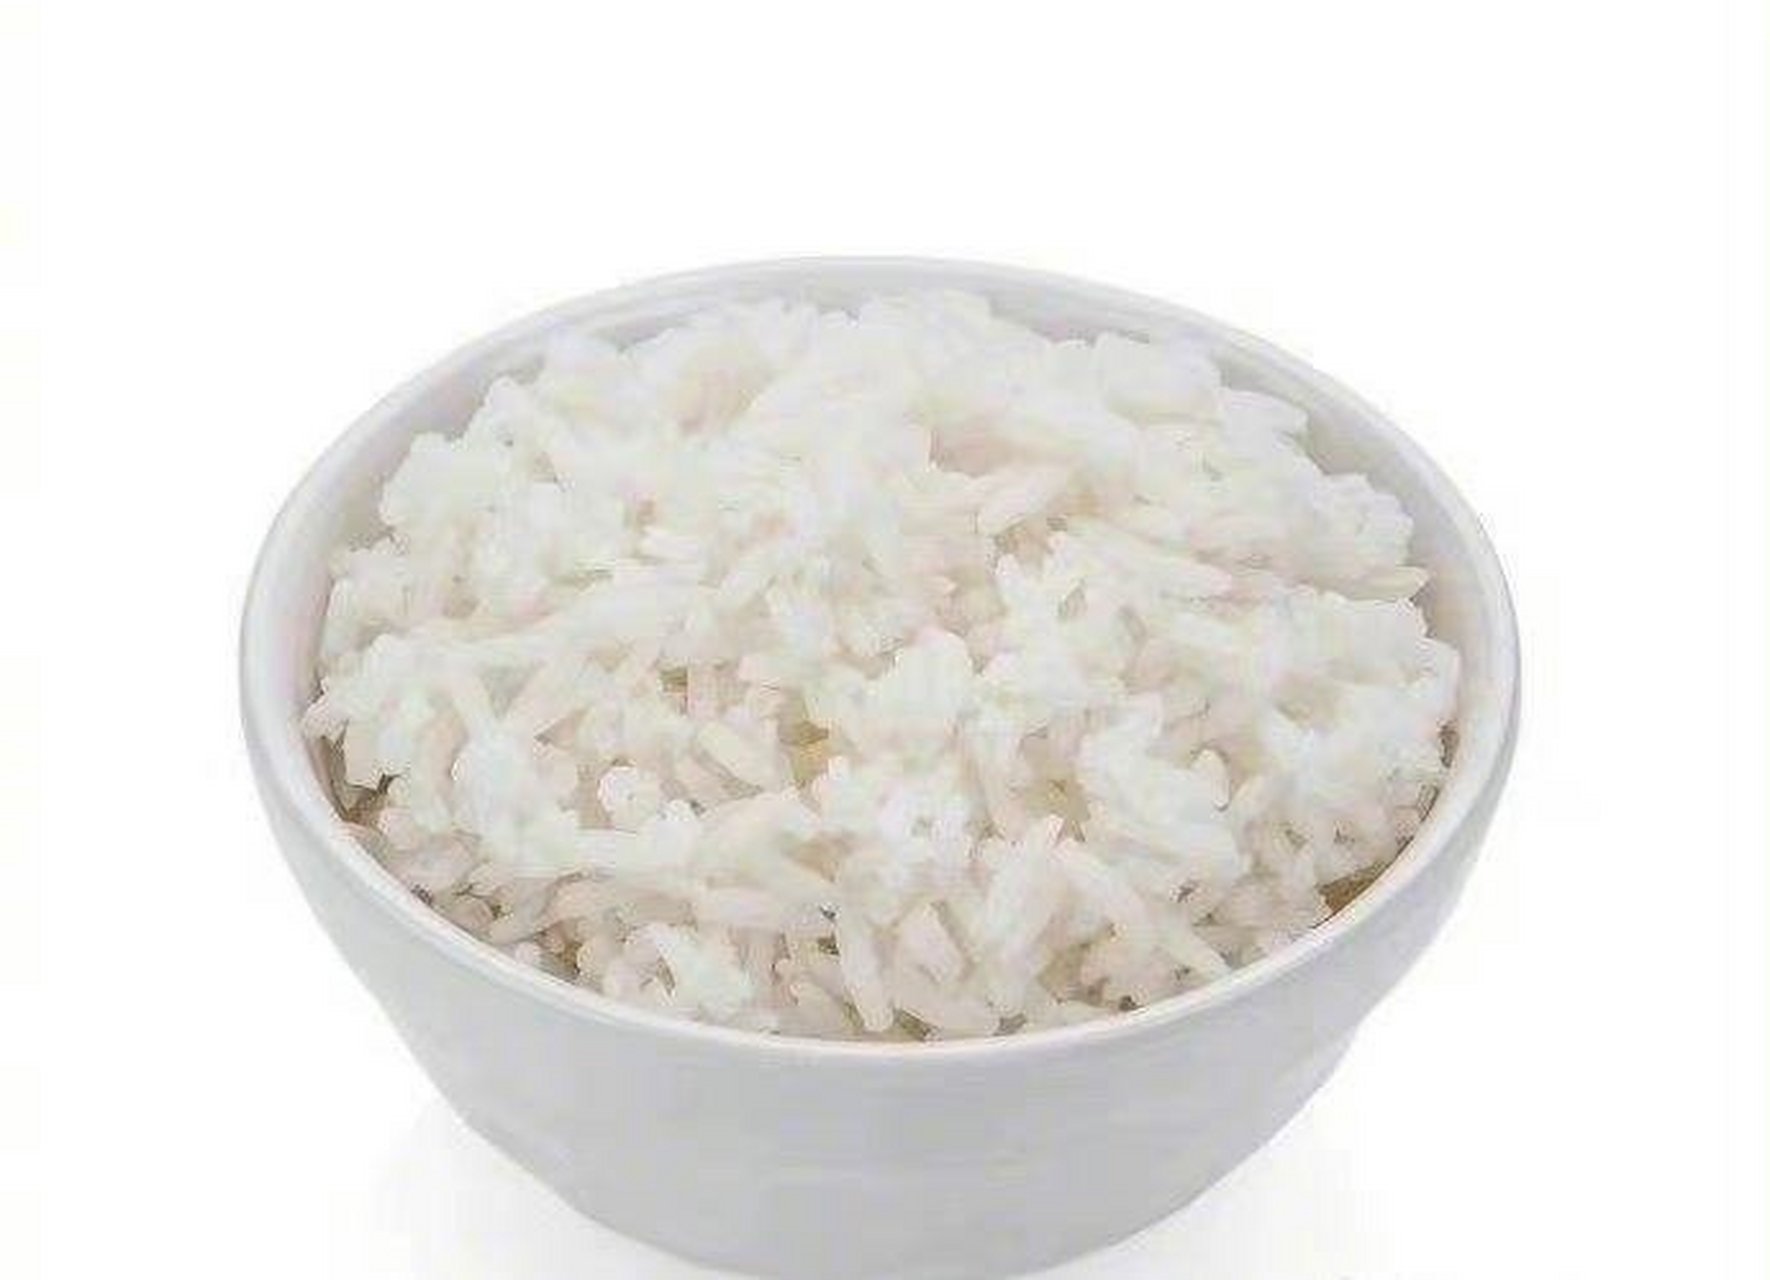 给你一碗白米饭,如果只允许配一个菜,你会配什么菜?